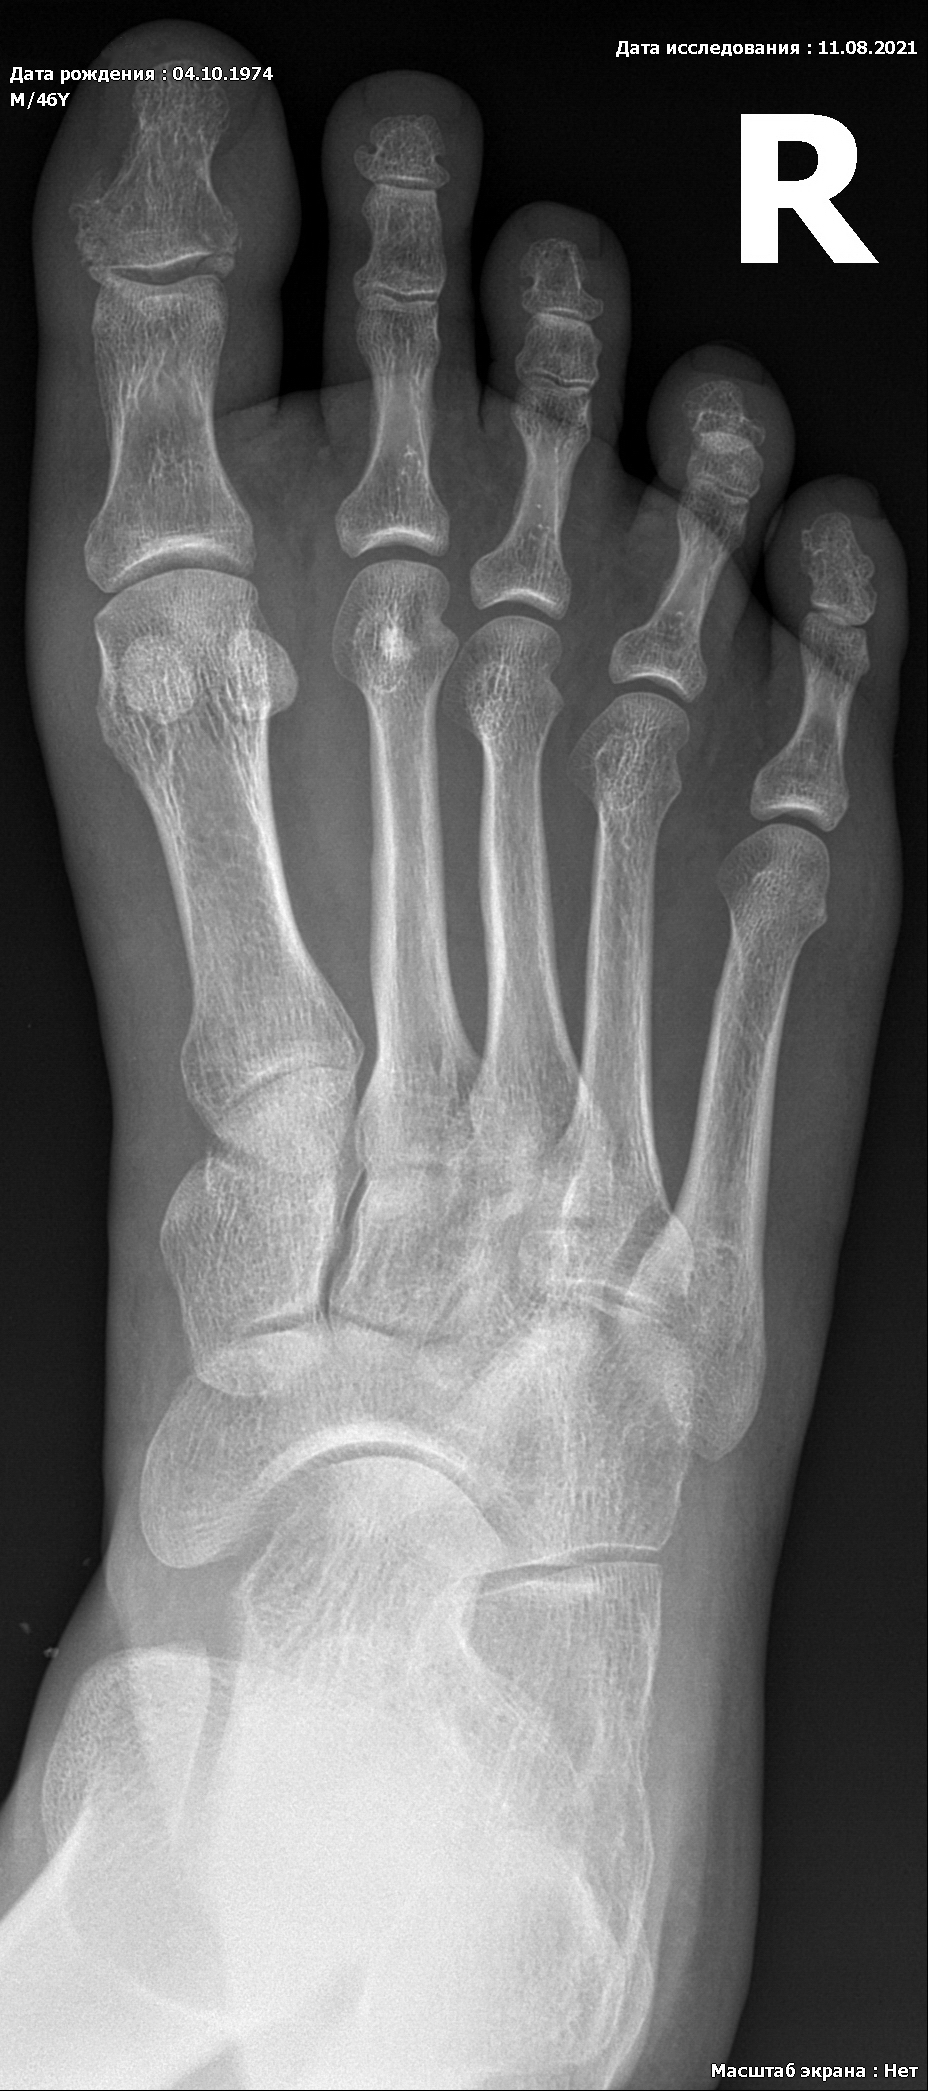 Ногтевой фаланги пальца ноги. Перелом ногтевой фаланги рентген. Внутрисуставной перелом фаланги пальца рентген. Внутрисуставной перелом пальца снимки. Перелом ногтевой фаланги 1 пальца стопы.